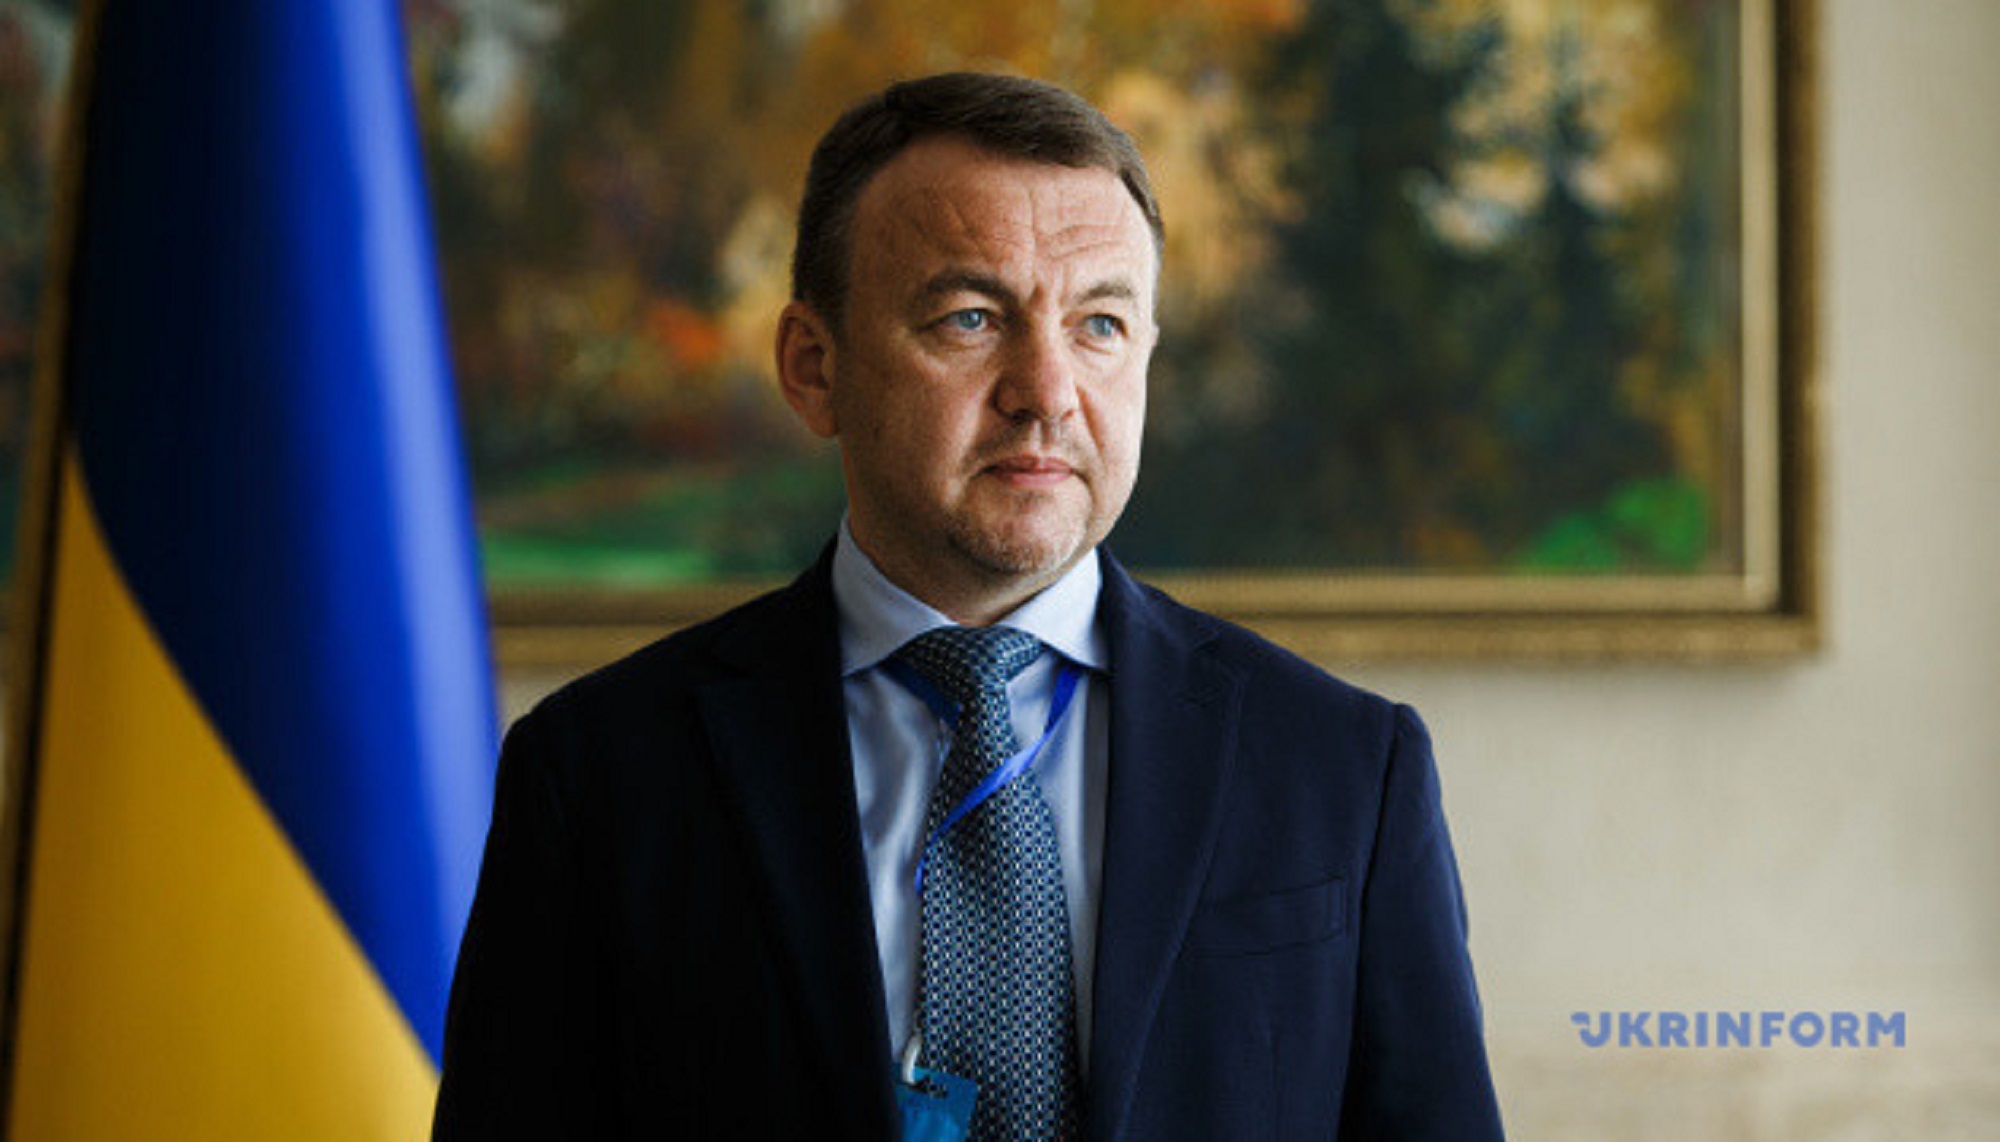 Олексій Петров прокоментував сьогоднішнє рішення депутатів обласної ради про його дострокове припинення повноважень на посаді голови Закарпатської облради.